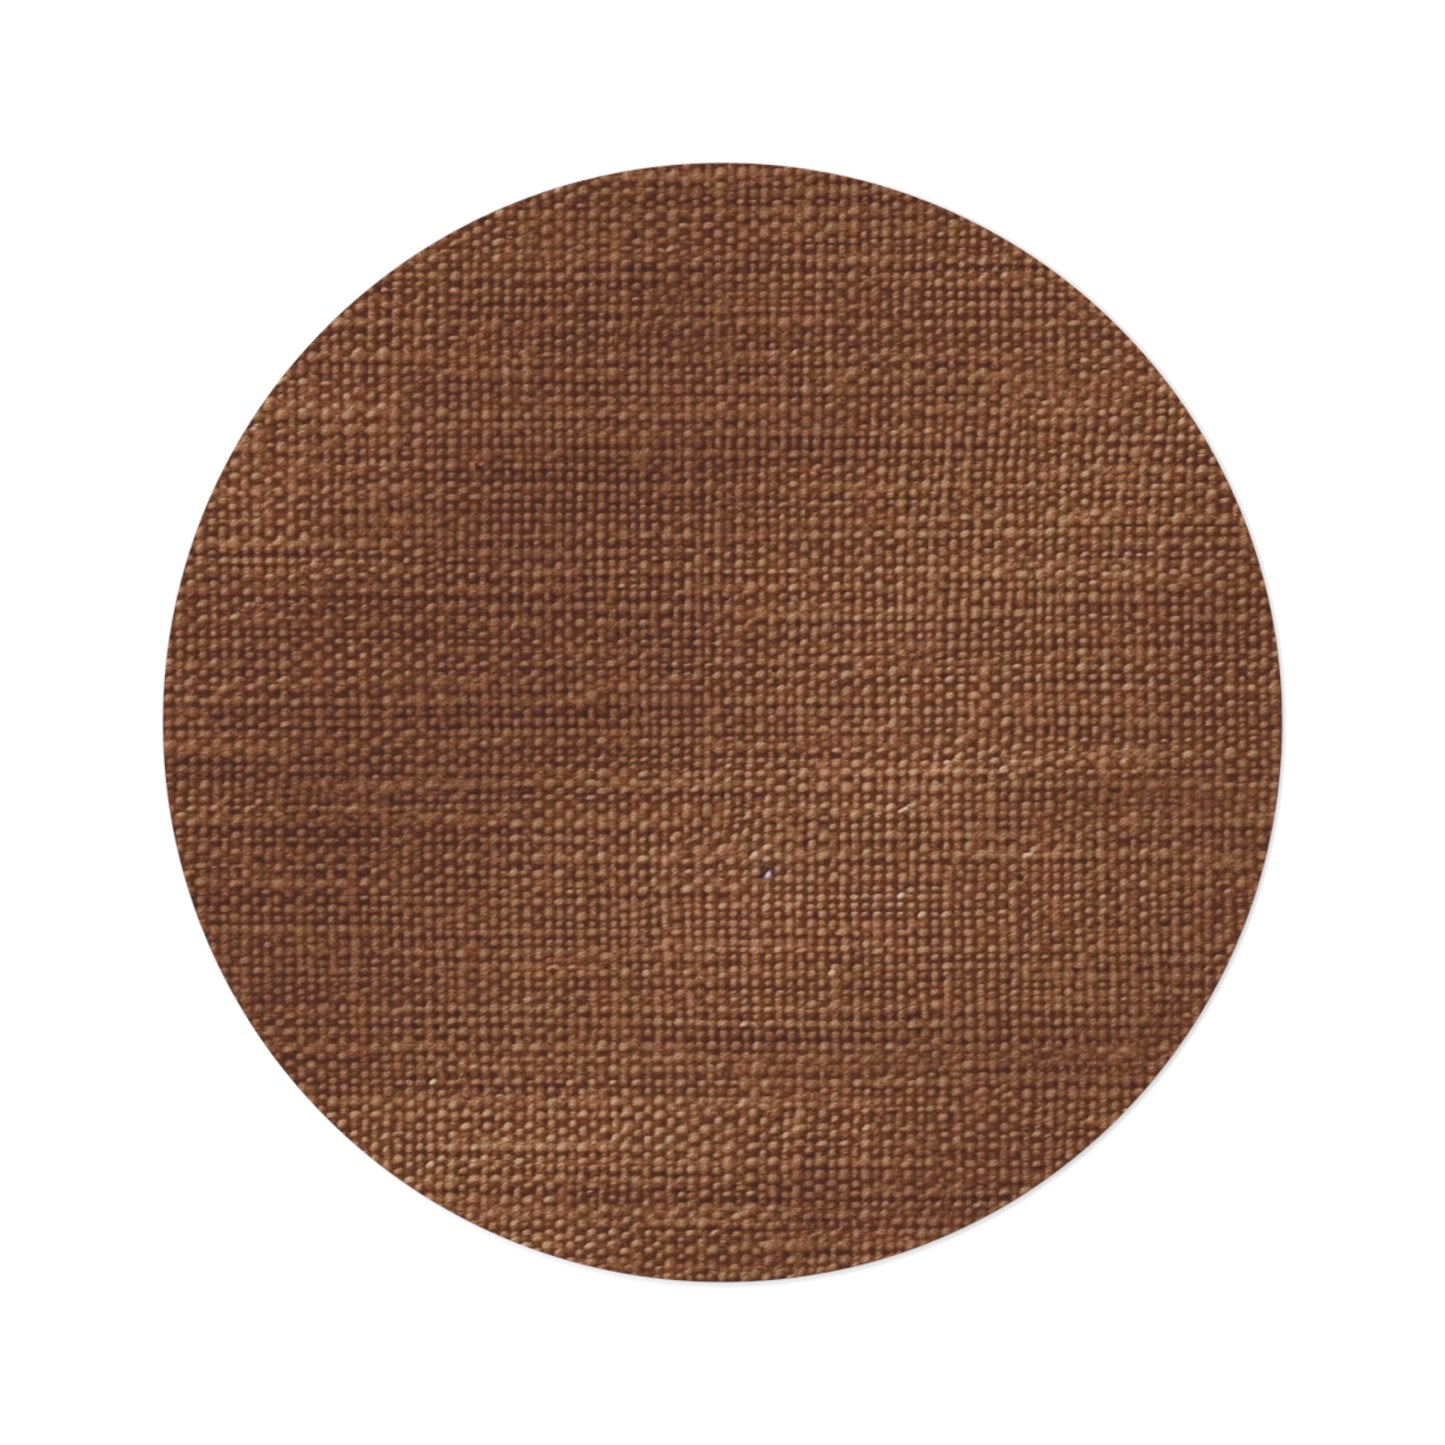 Luxe Dark Brown: Denim-Inspired, Distinctively Textured Fabric - Round Rug